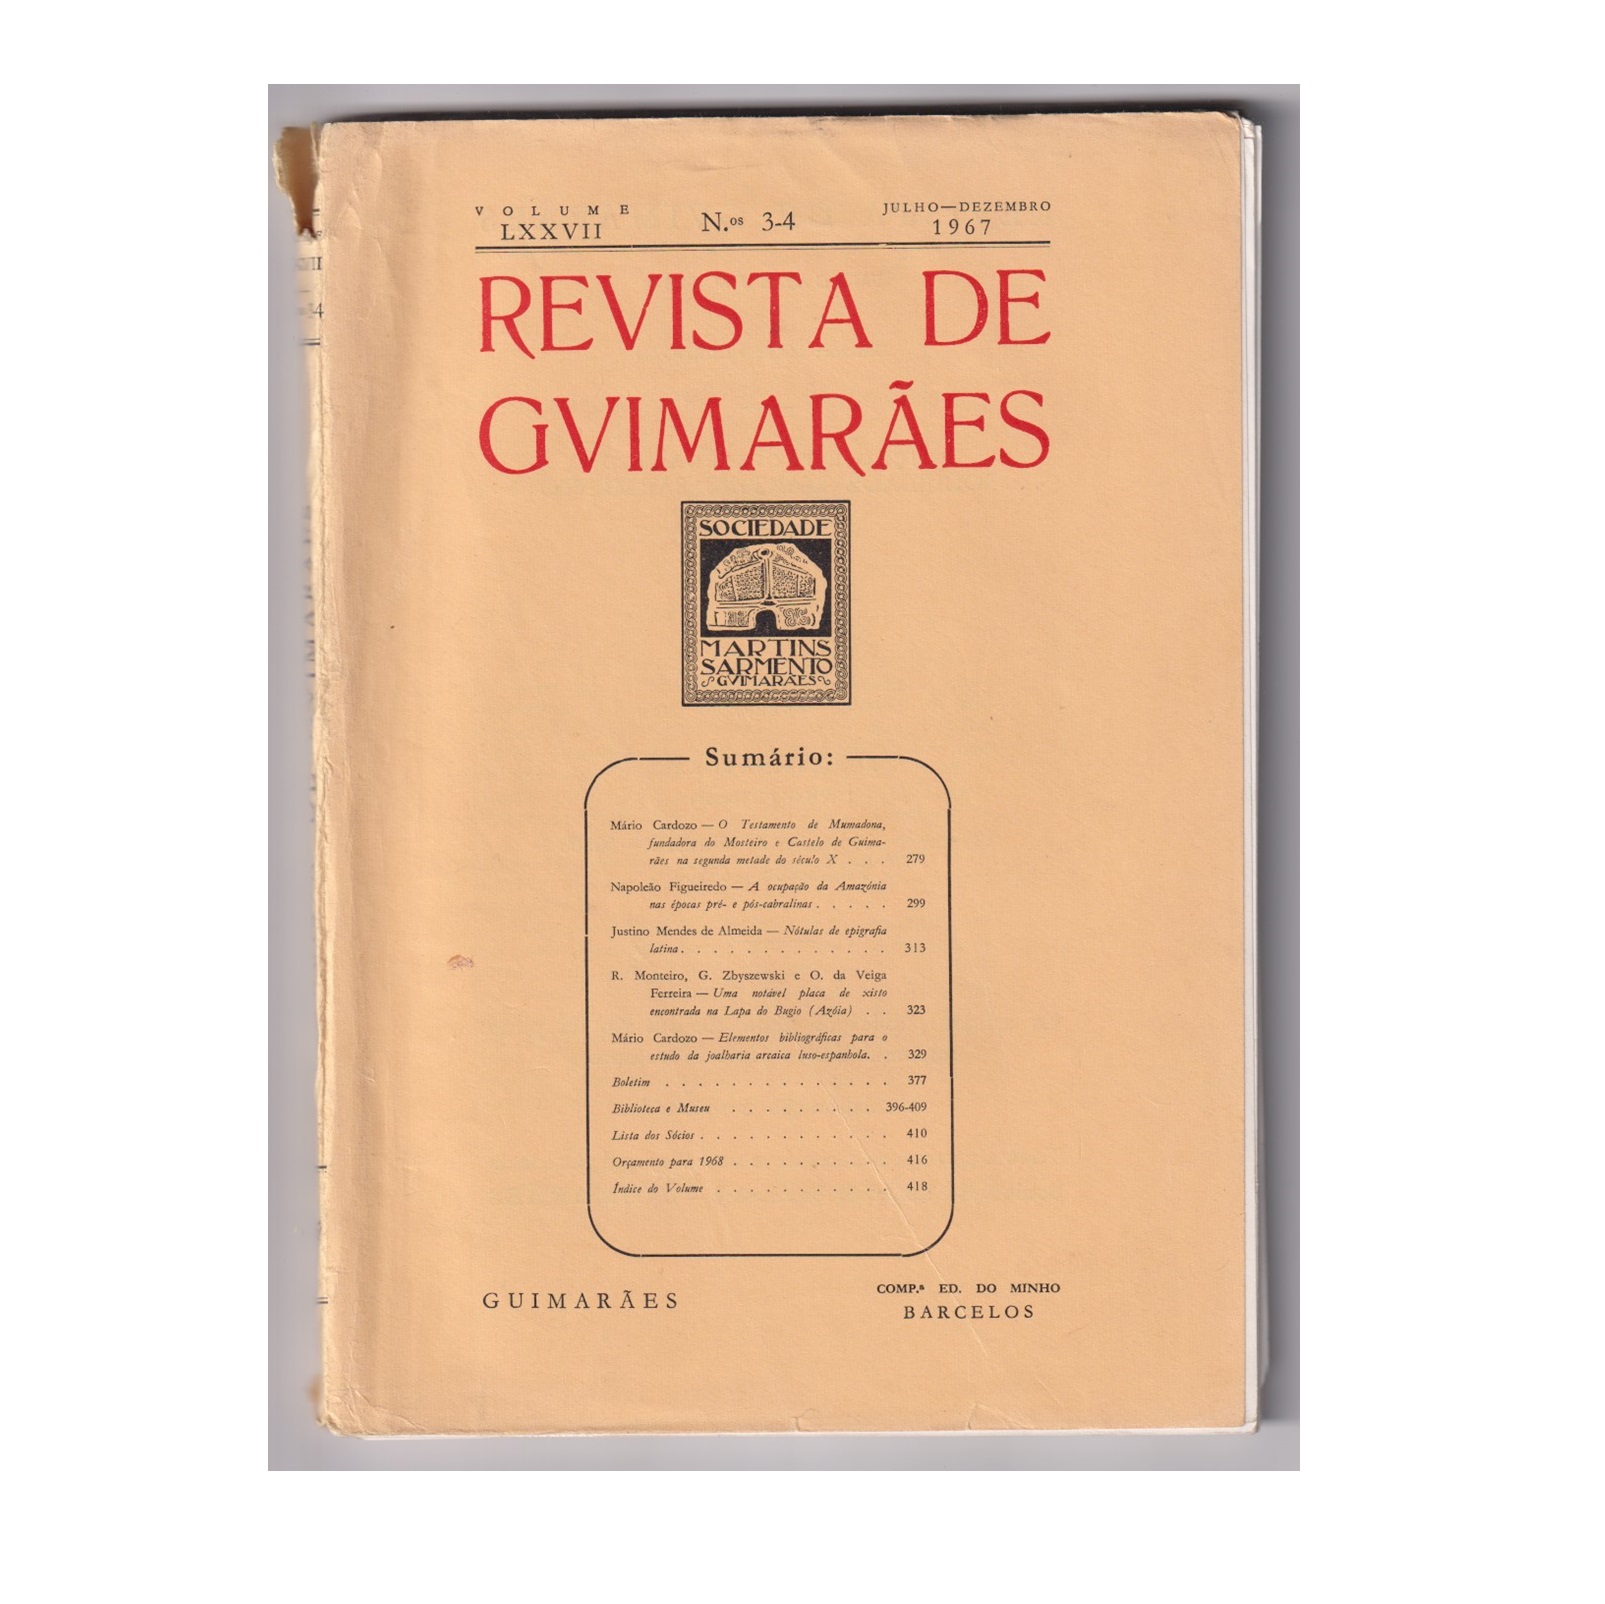 REVISTA DE GUIMARÃES. VOL. LXXVII. N.º 3-4, 1967